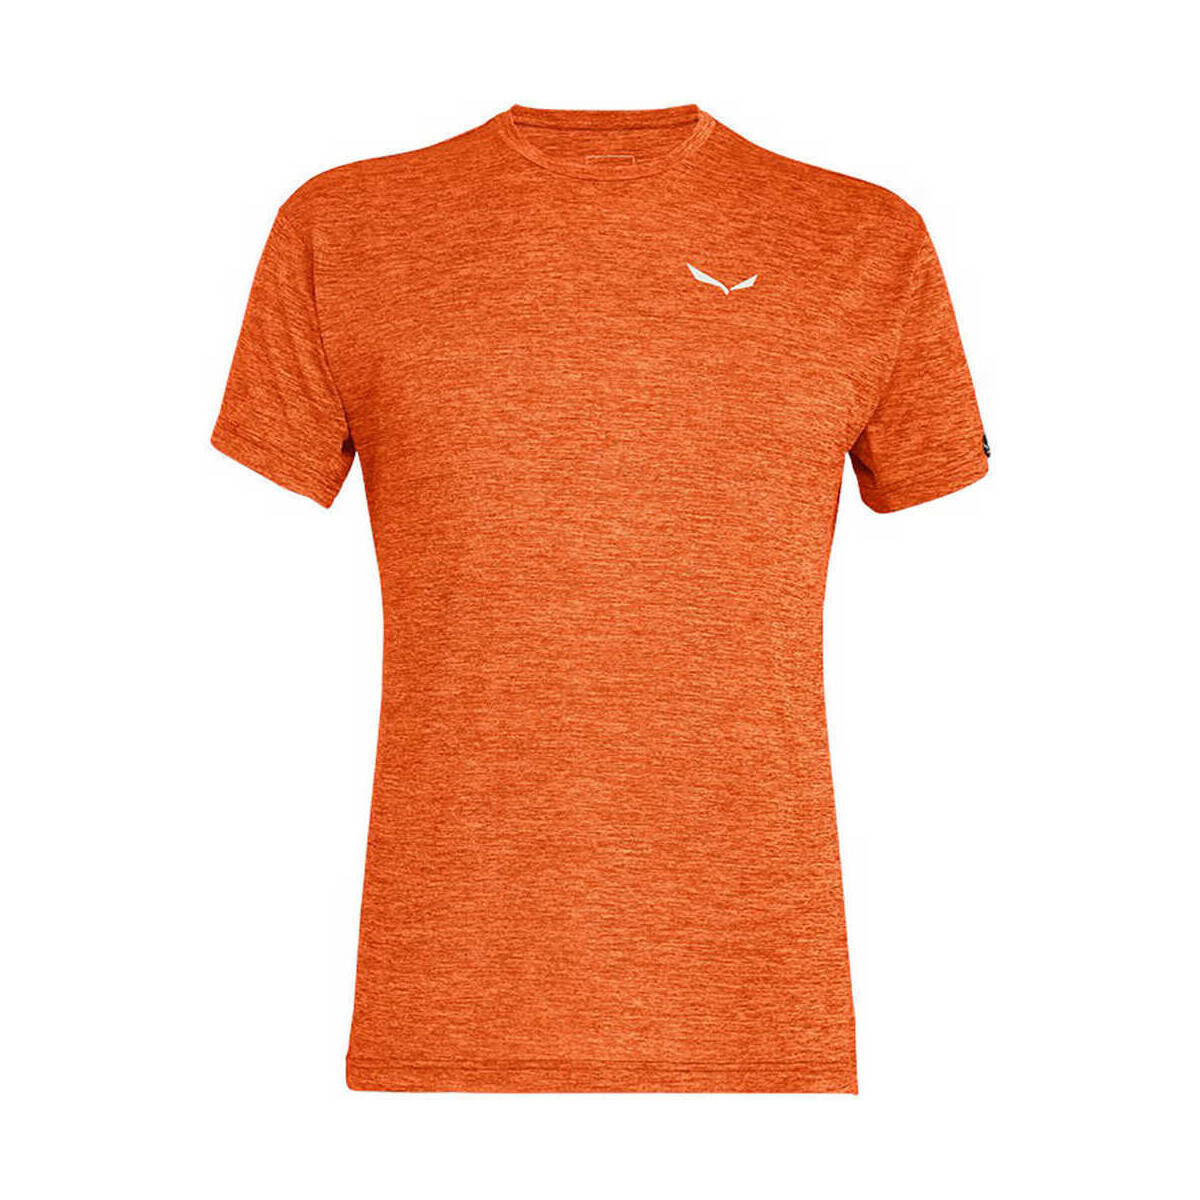 Vêtements Homme T-shirts manches courtes Salewa PUEZ MELANGE DRY M S/S TEE Orange